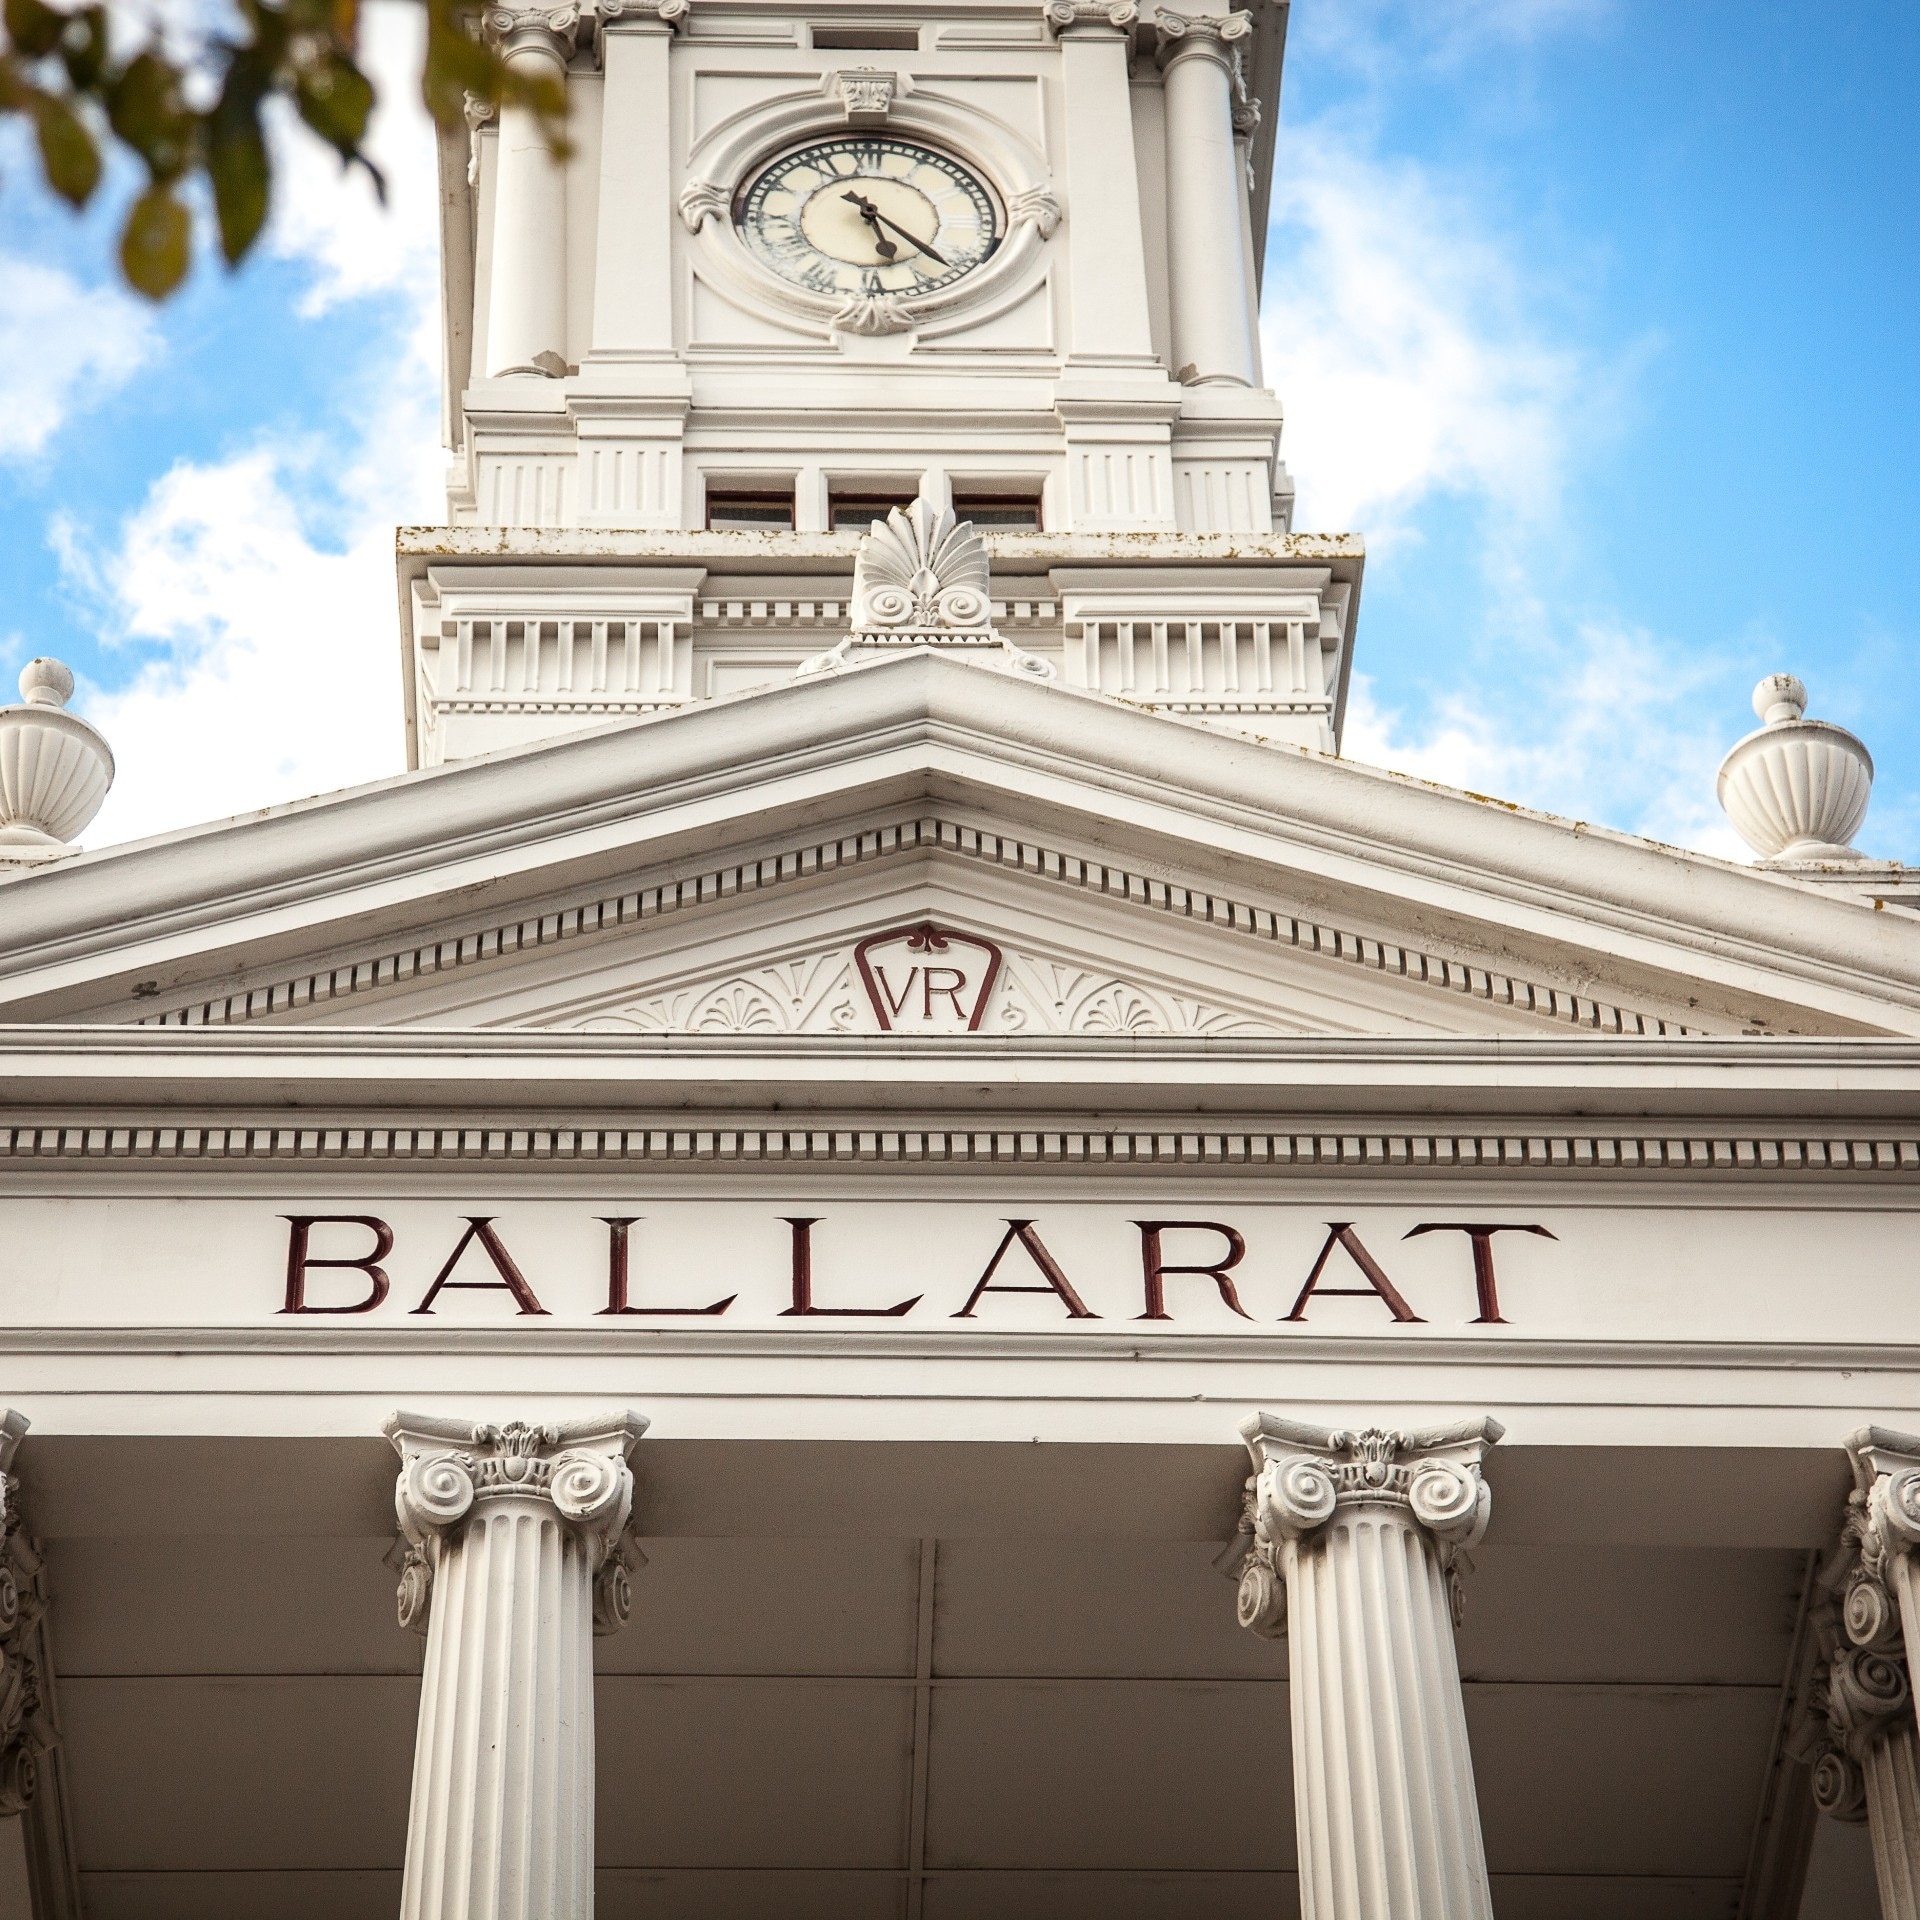 Ballarat Railway Station, Ballarat, VIC © Visit Victoria